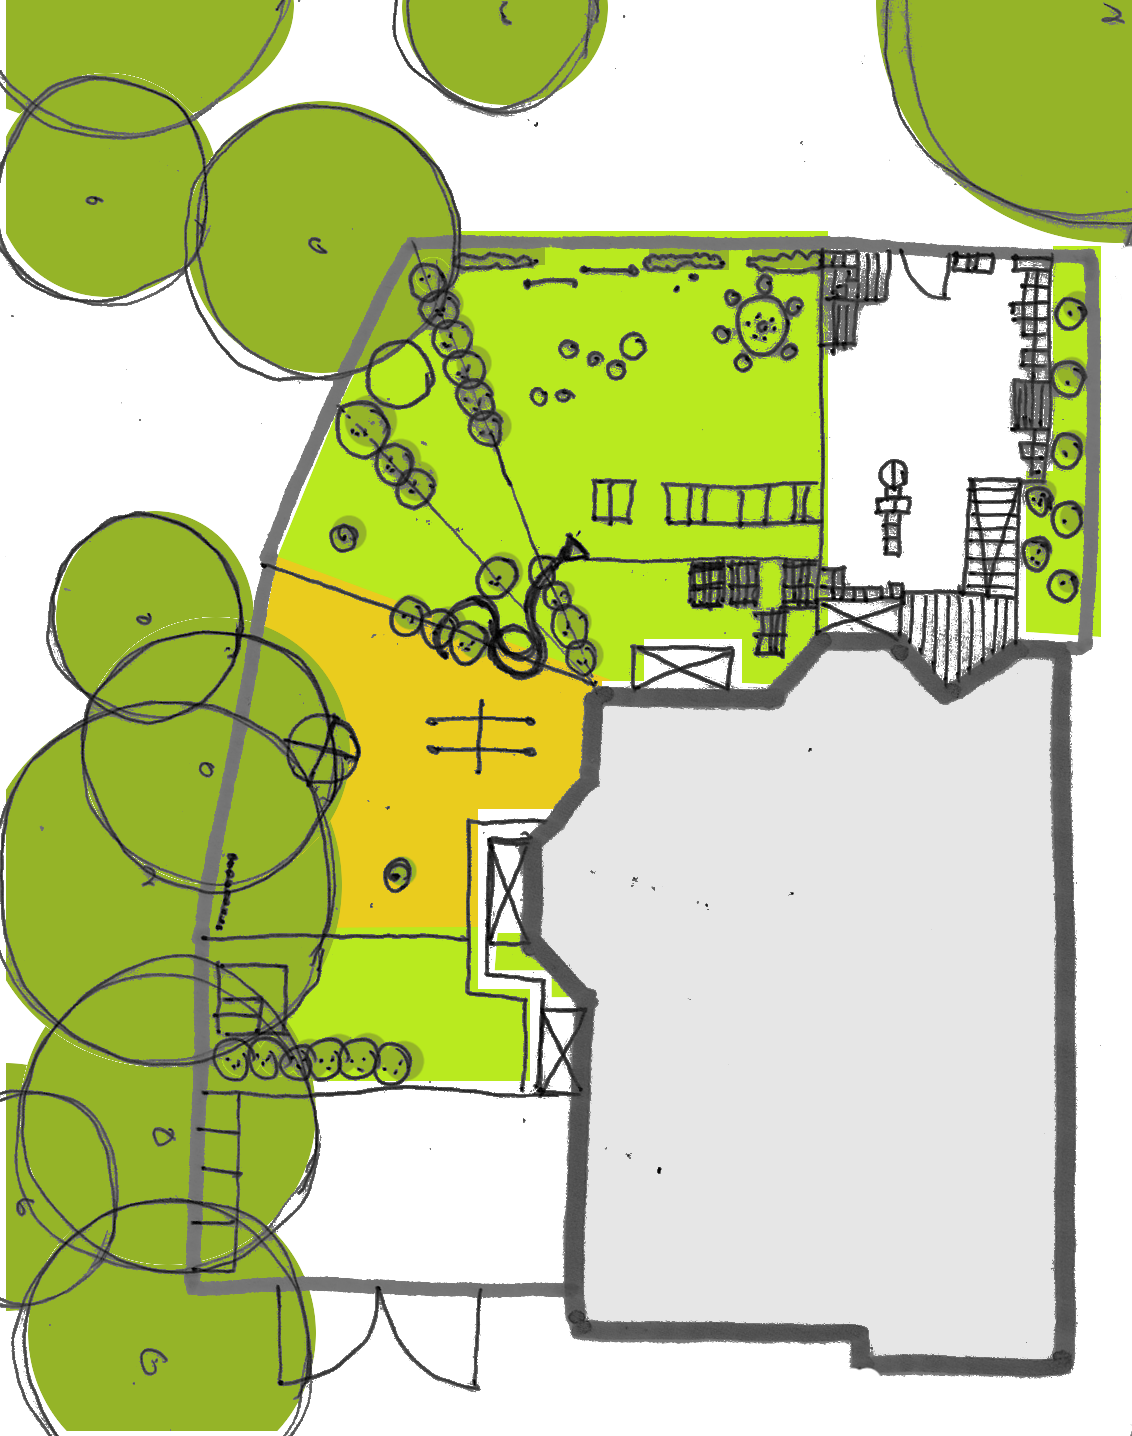 przyrodnicze azyle w miejskich przedszkolach / konsultacje architektoniczno-krajobrazowe / k01 / strona 3 3/ ZAGOSPODAROWANIE TERENU/ RZUT modułowy labirynt tablice szałas z wikliny krzewy owocowe